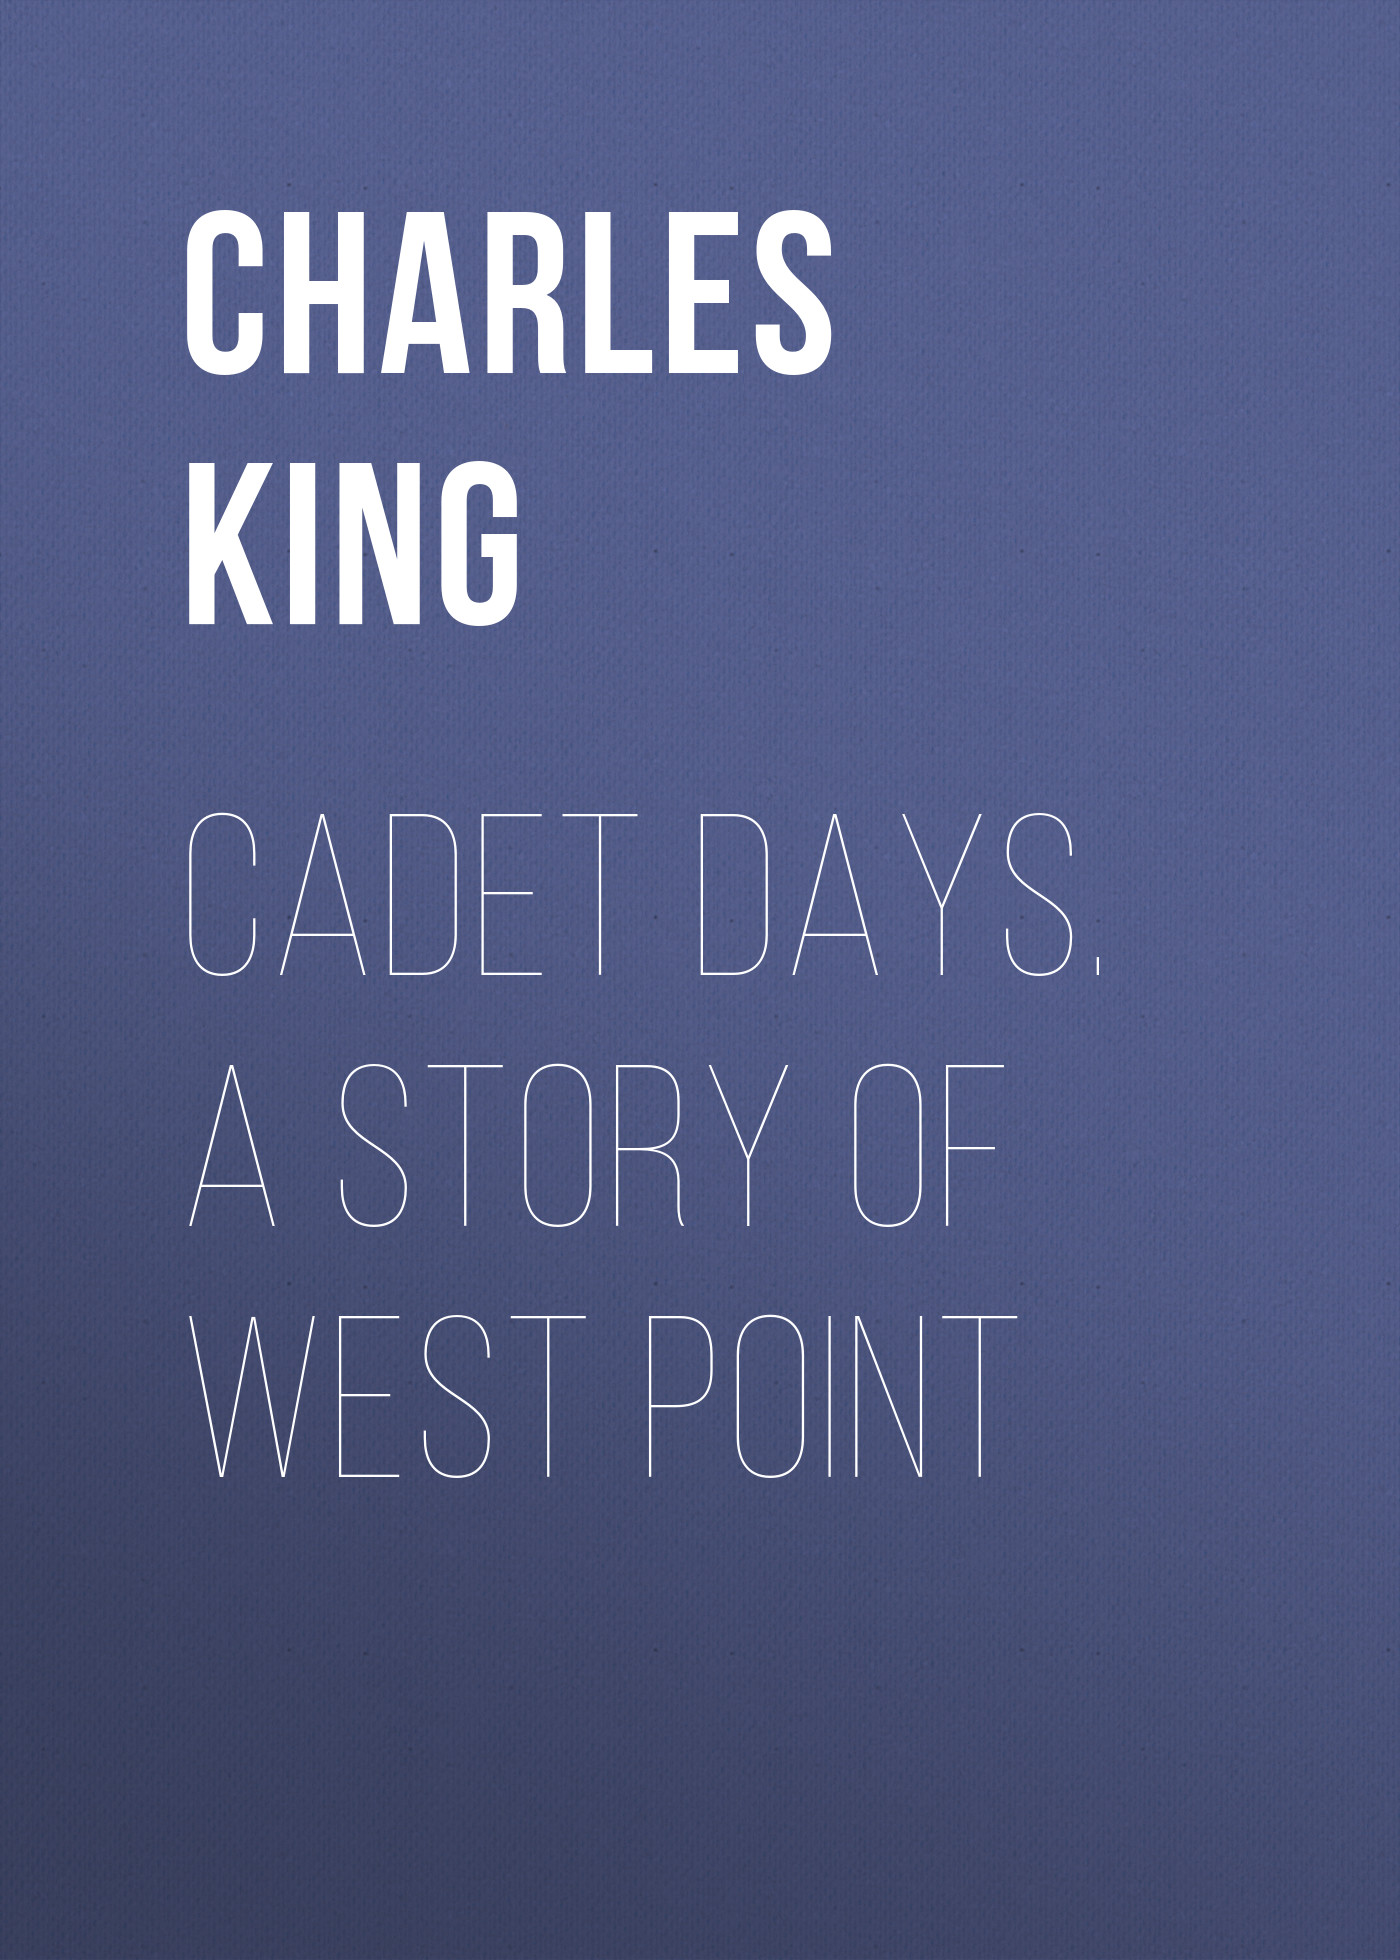 Книга Cadet Days. A Story of West Point из серии , созданная Charles King, может относится к жанру Иностранные языки, Зарубежная классика. Стоимость электронной книги Cadet Days. A Story of West Point с идентификатором 23159523 составляет 5.99 руб.